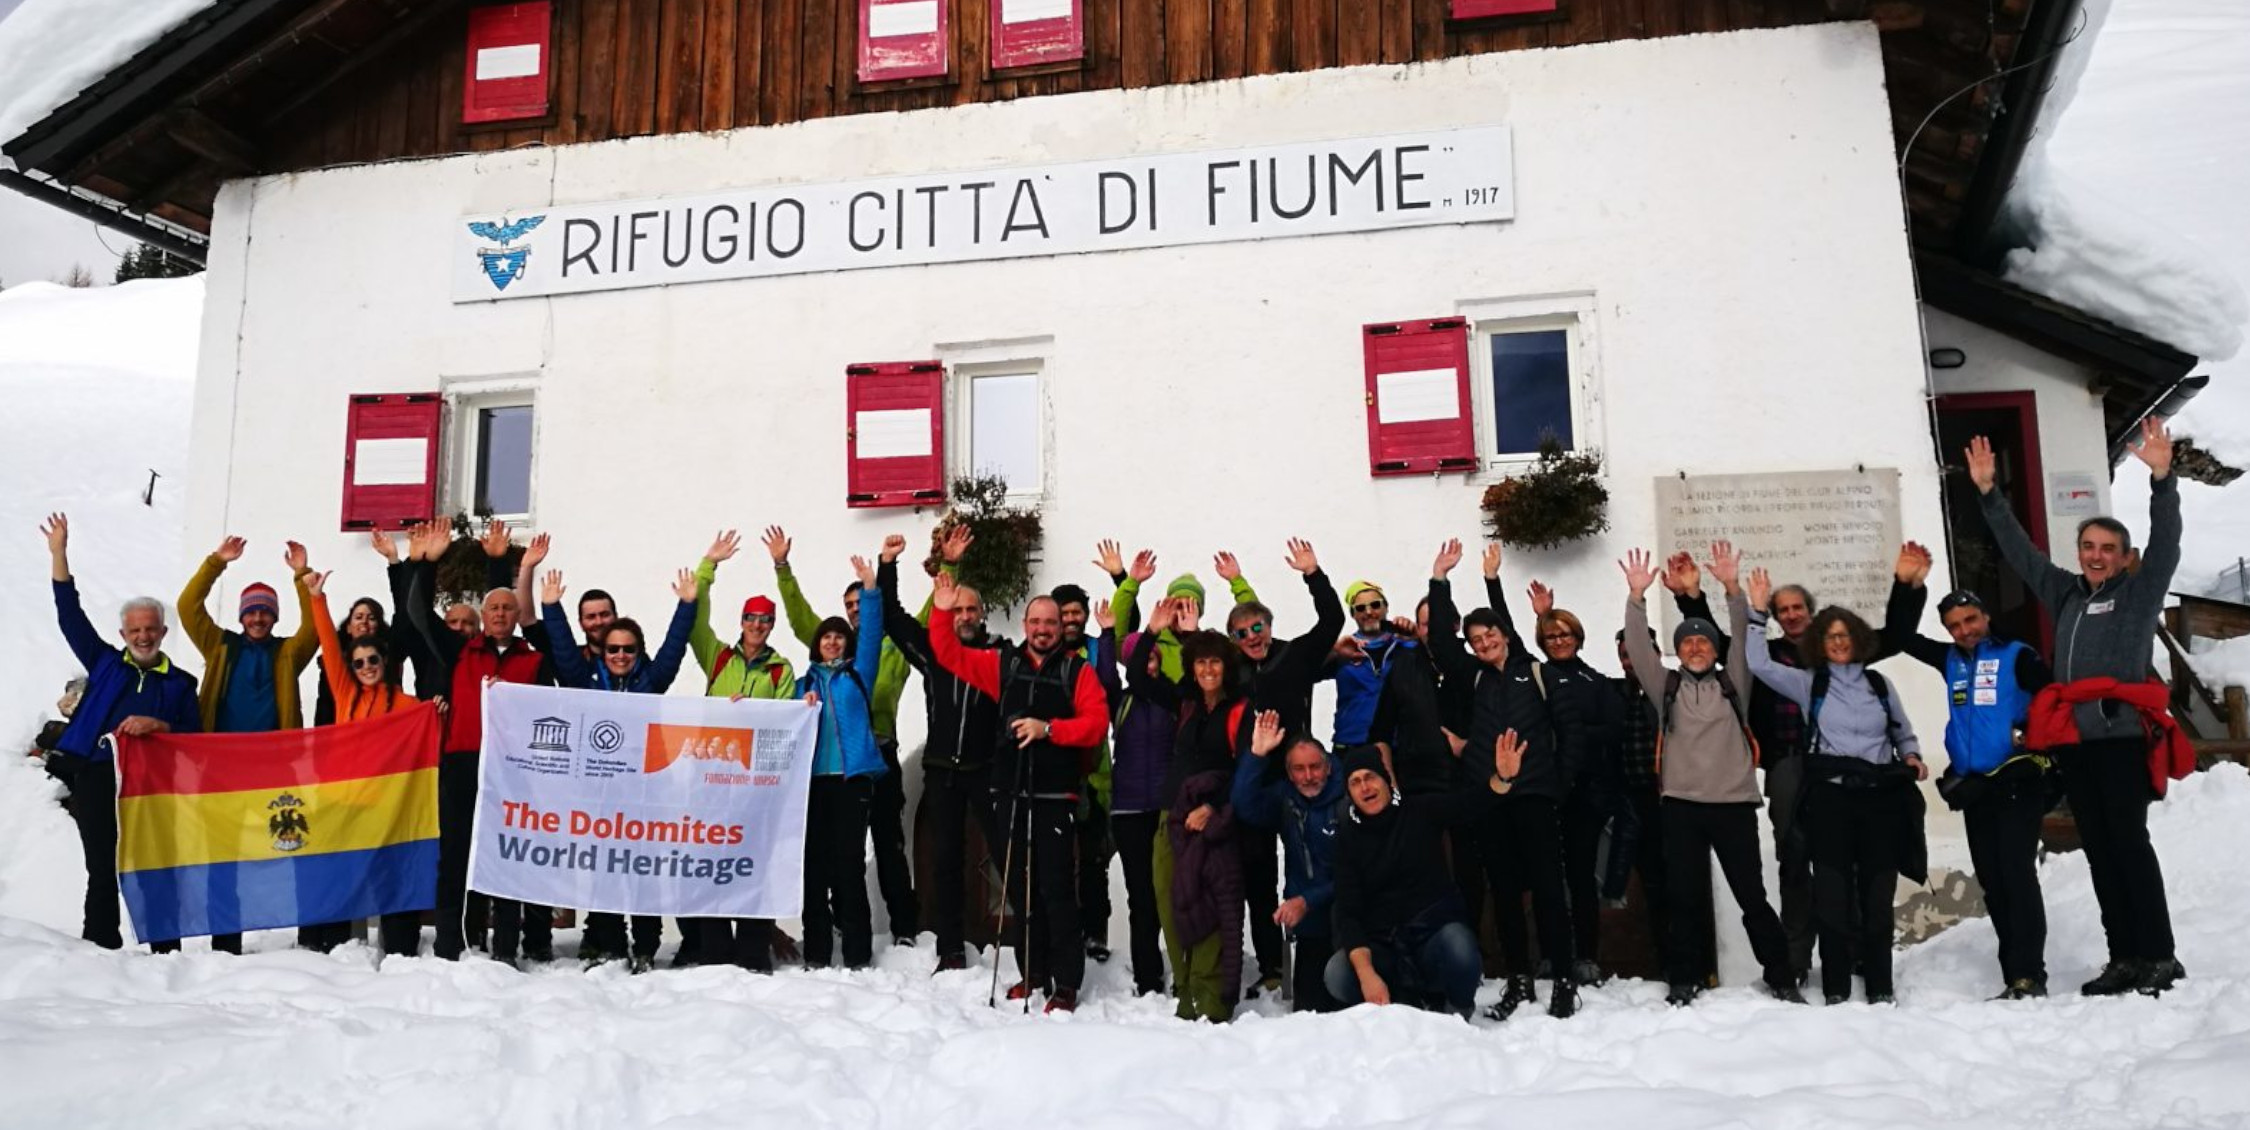 I gestori di rifugio delle Dolomiti UNESCO al Rifugio Città di Fiume